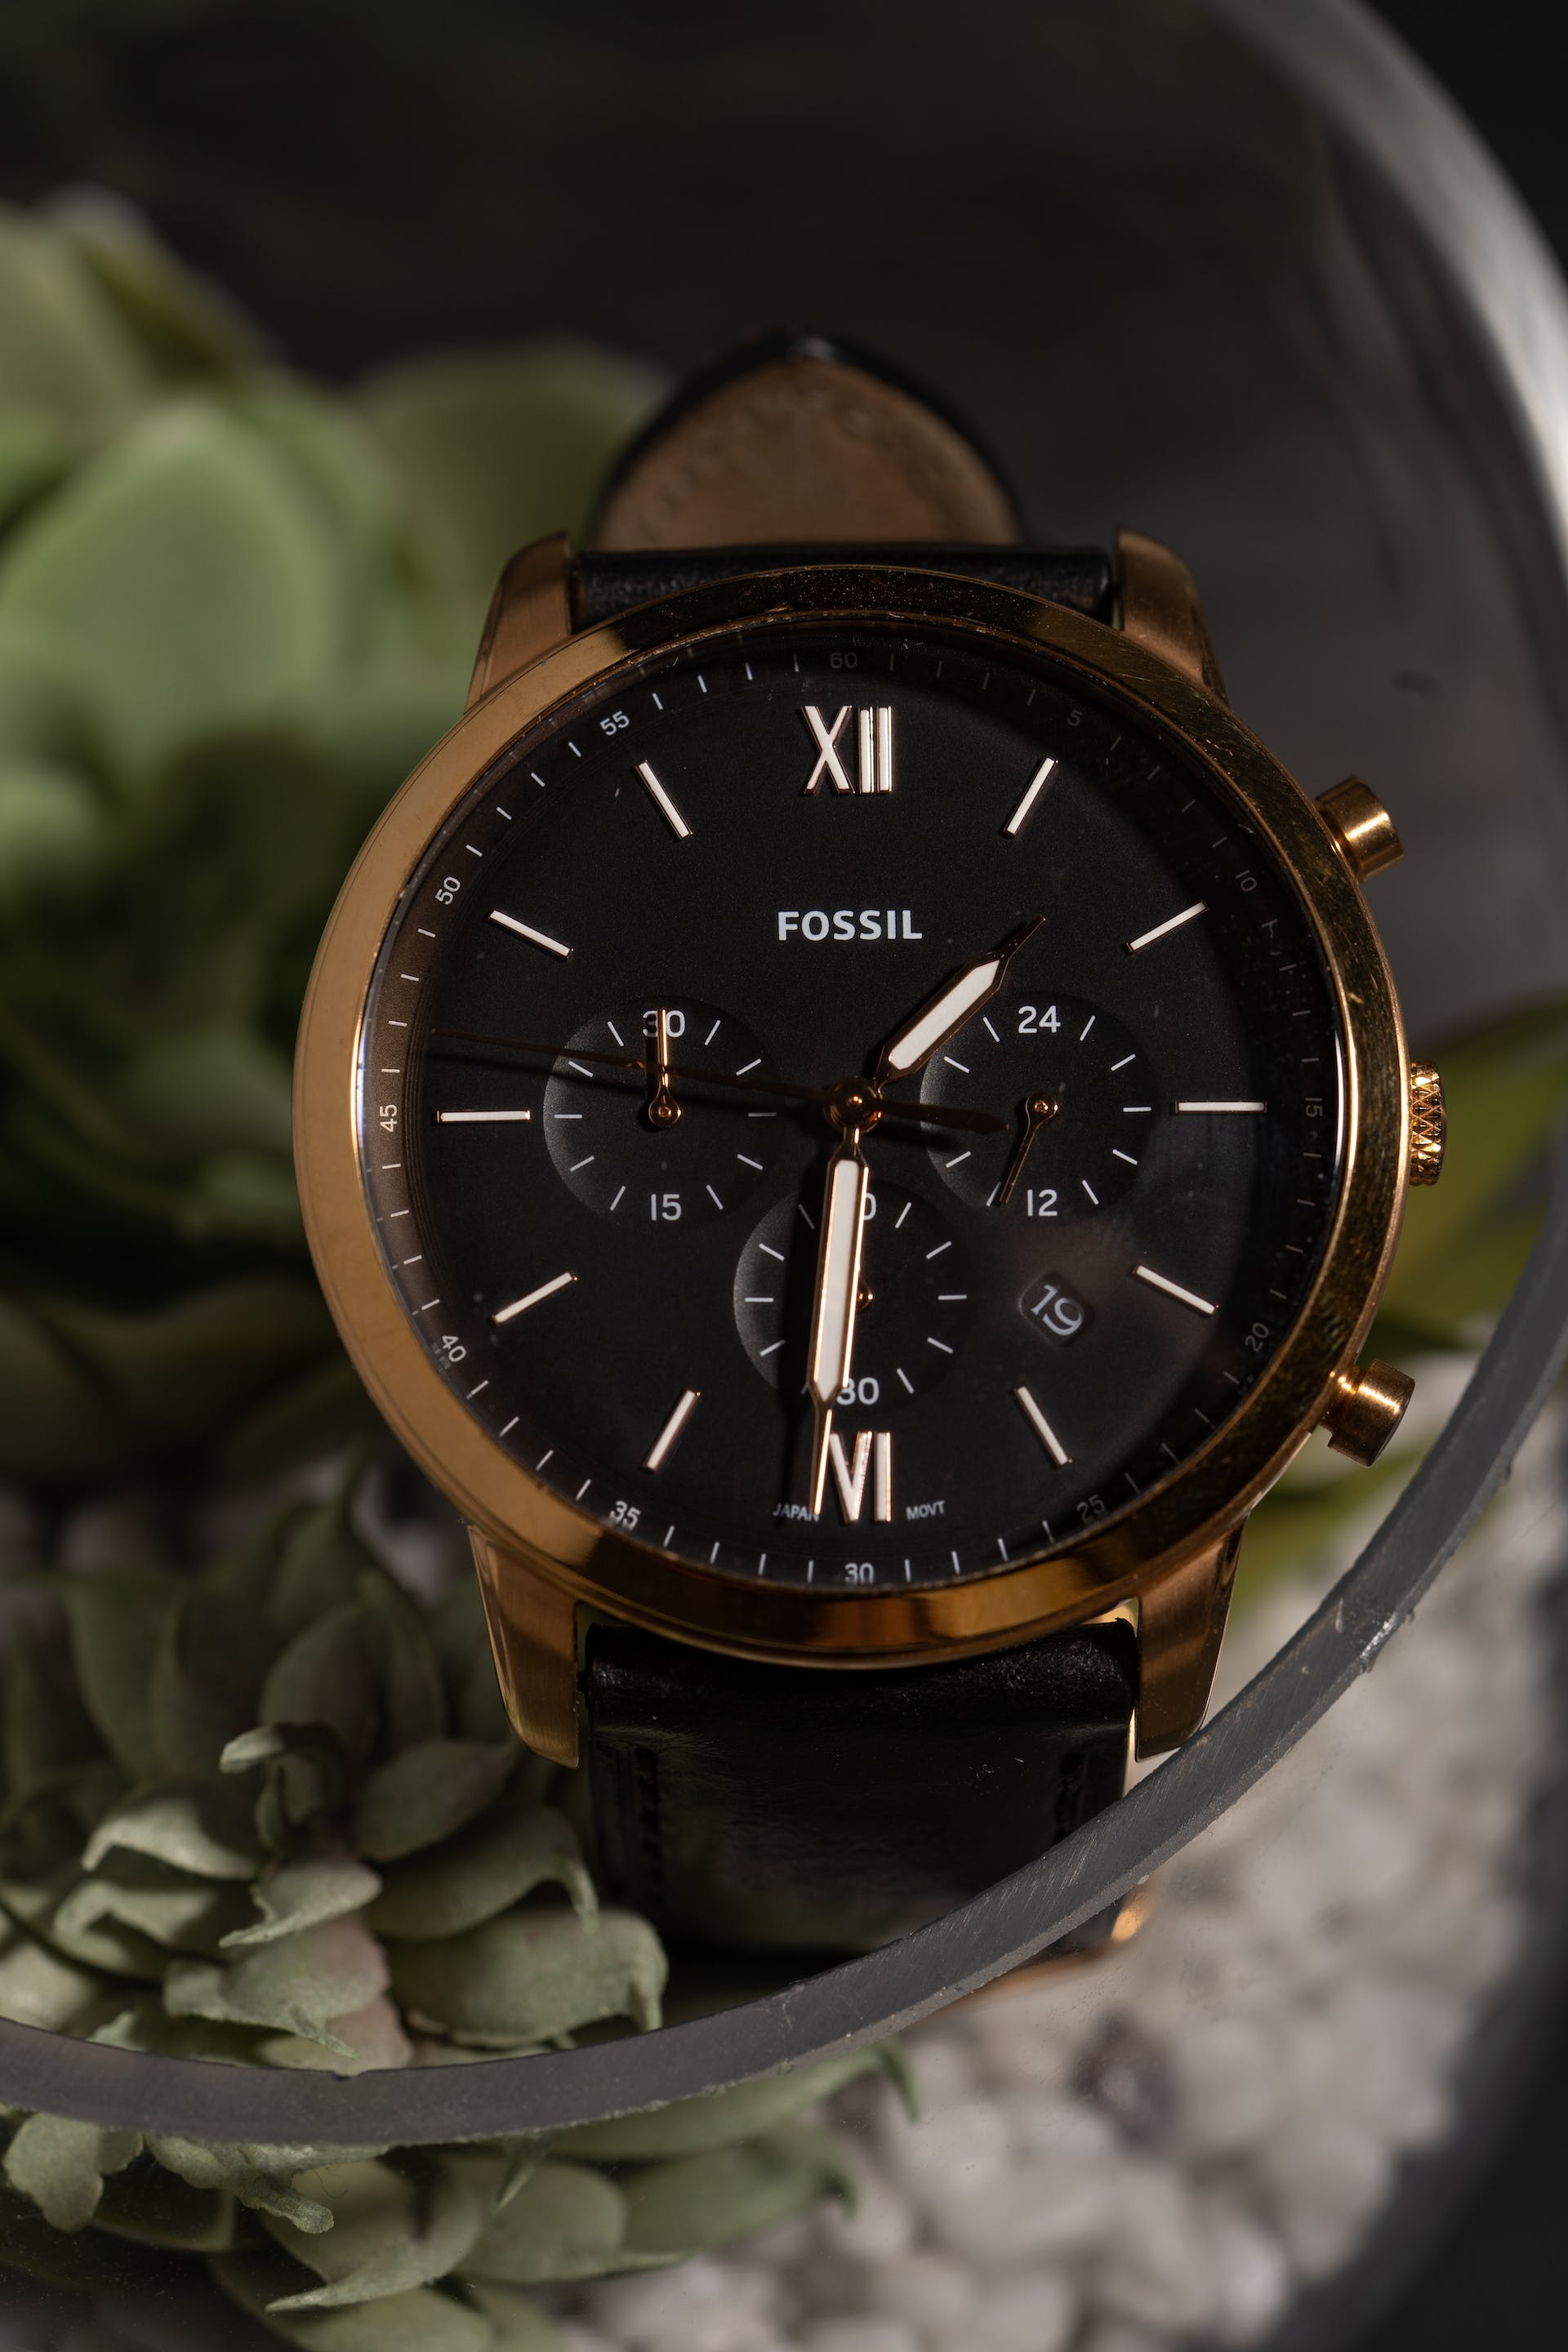 Un reloj de pulsera | Fuente: Pexels